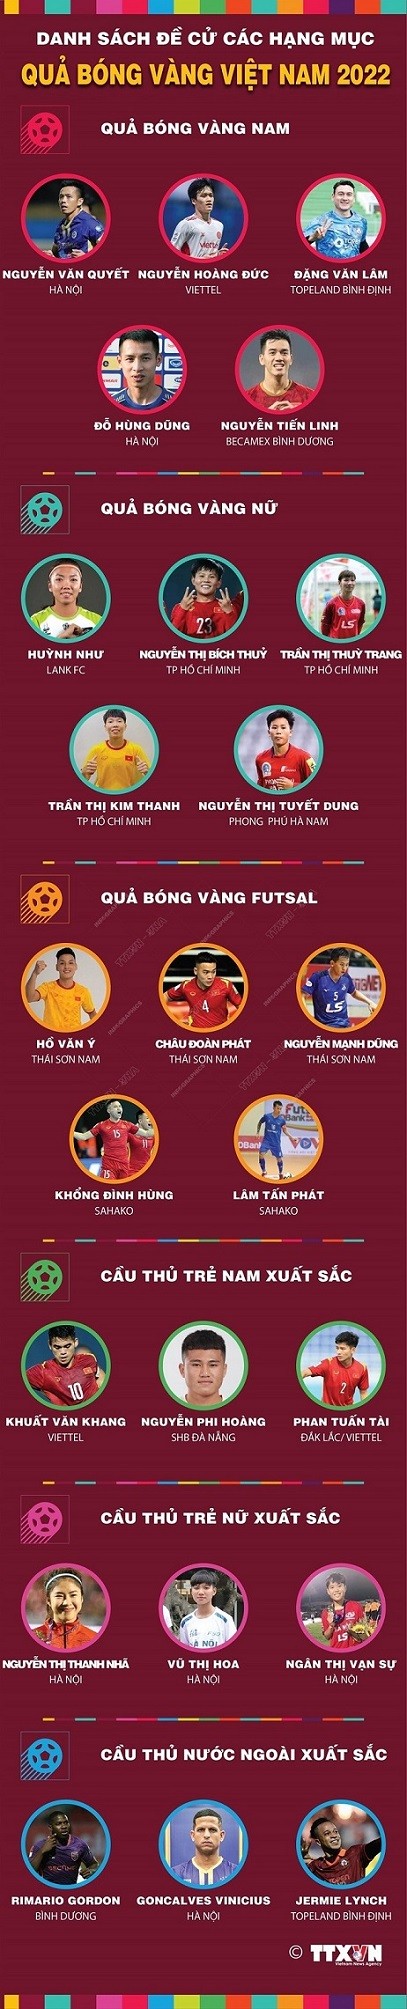 Danh sách đề cử hạng mục giải Quả bóng vàng Việt Nam 2022